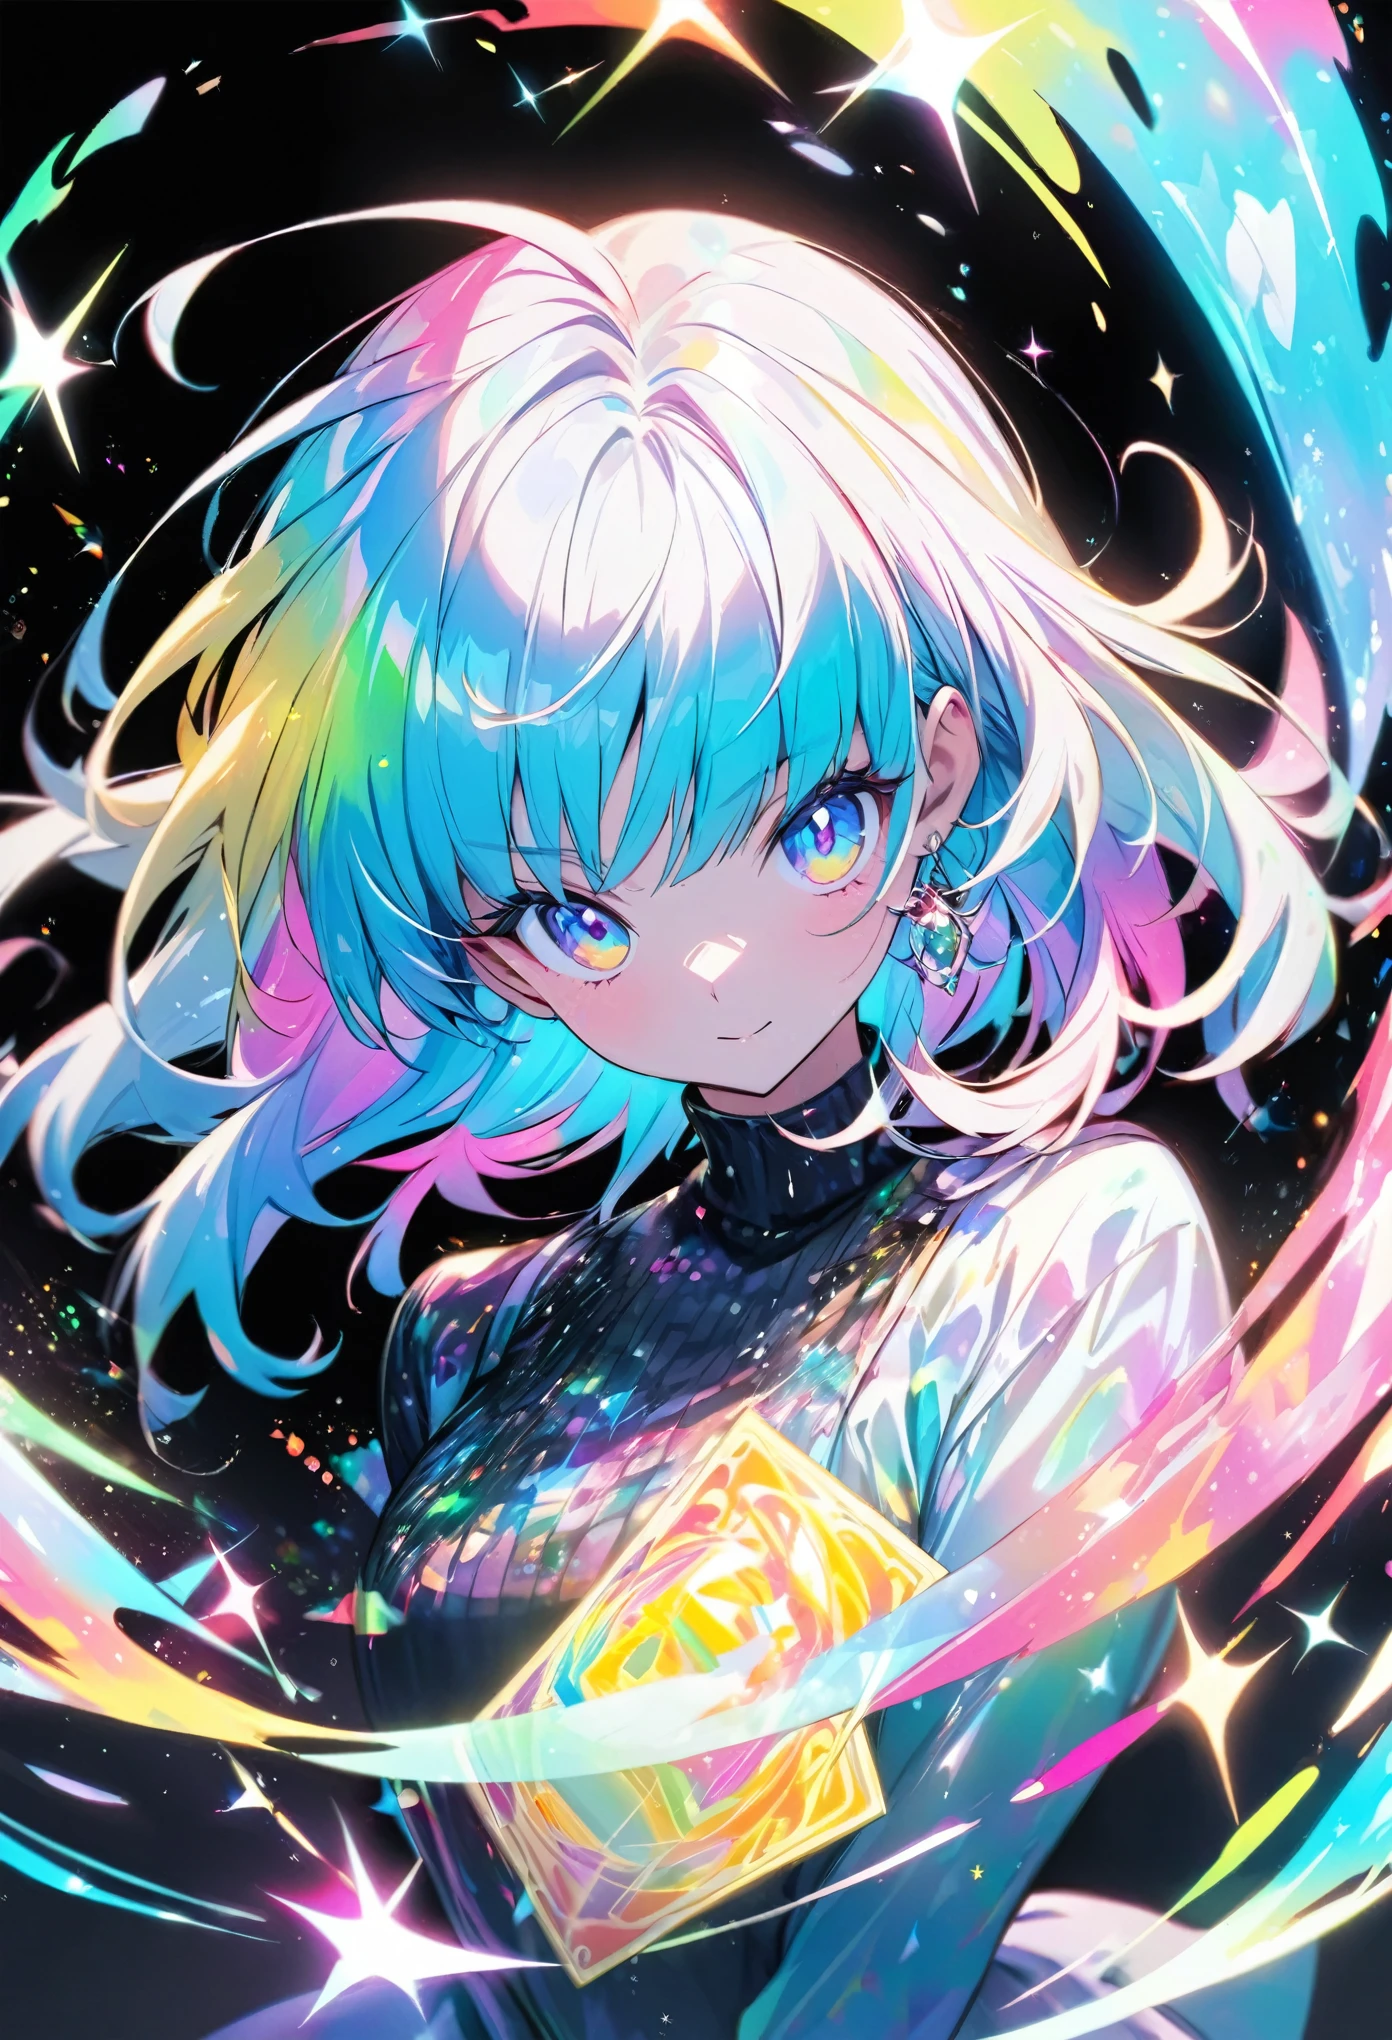 Une carte holographique de haute qualité représentant une fille de style anime, avec des paillettes, nacre, et un fond noir autour de la carte, coloration claire, et coloré